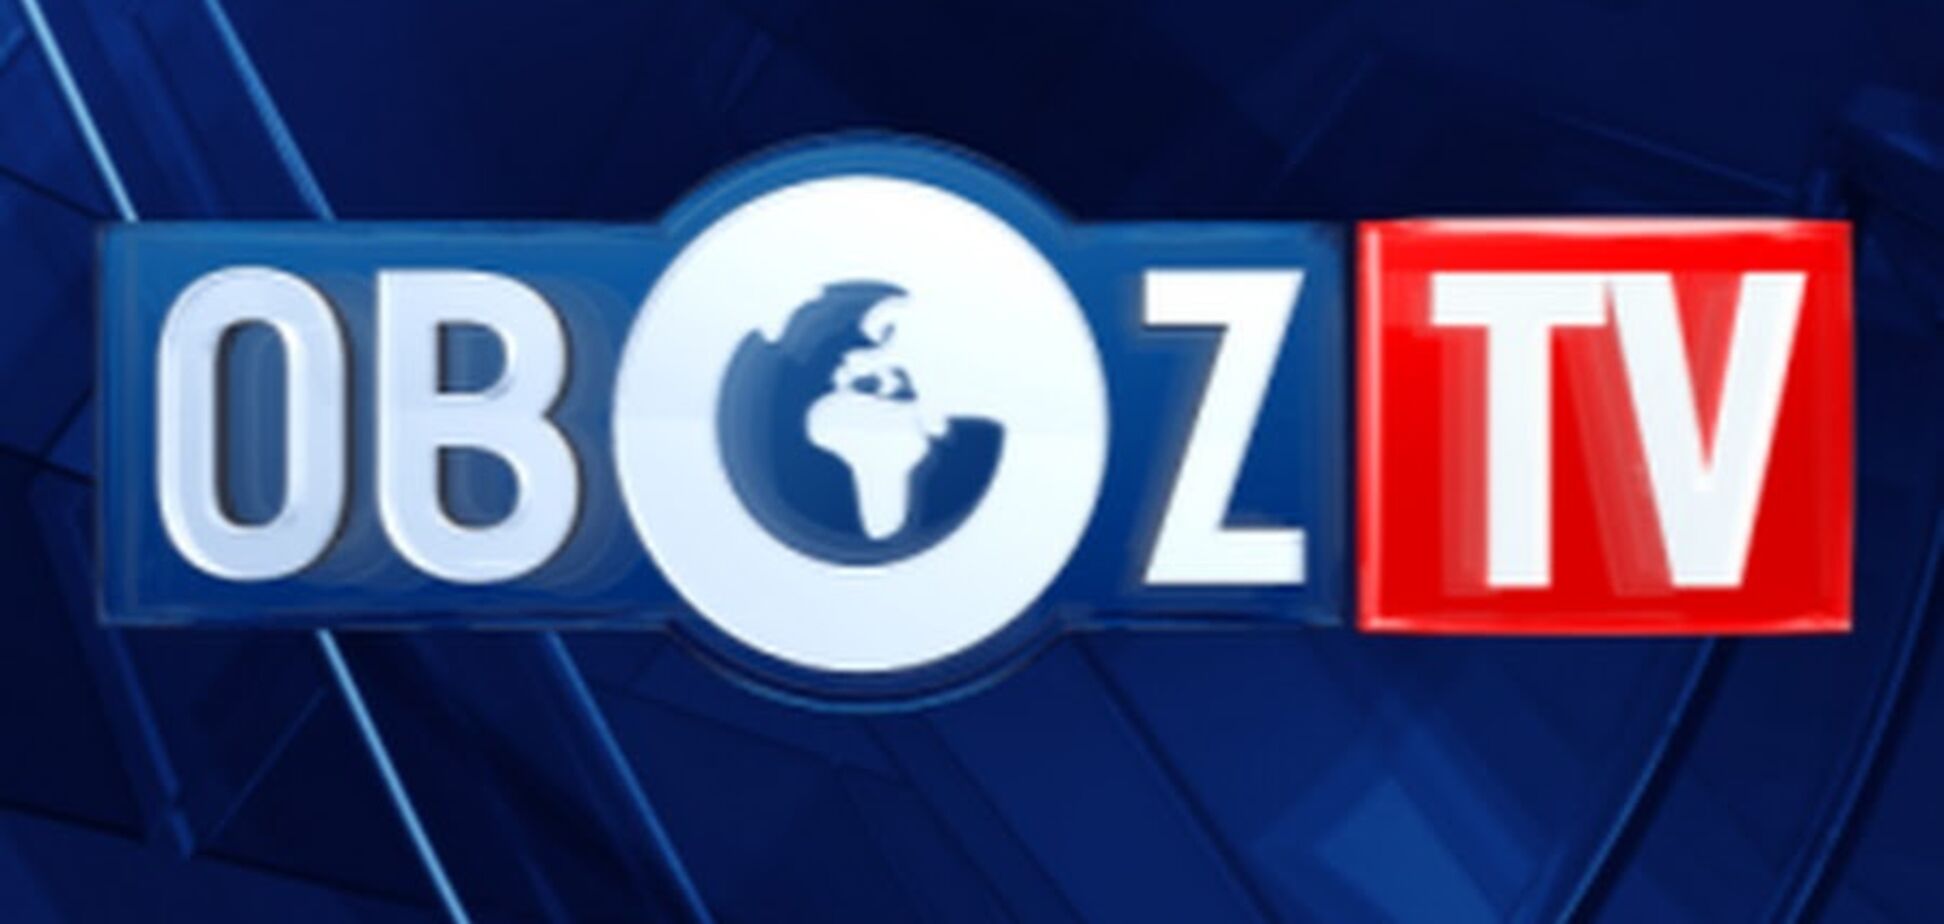 ObozTV вышел на спутниковое вещание